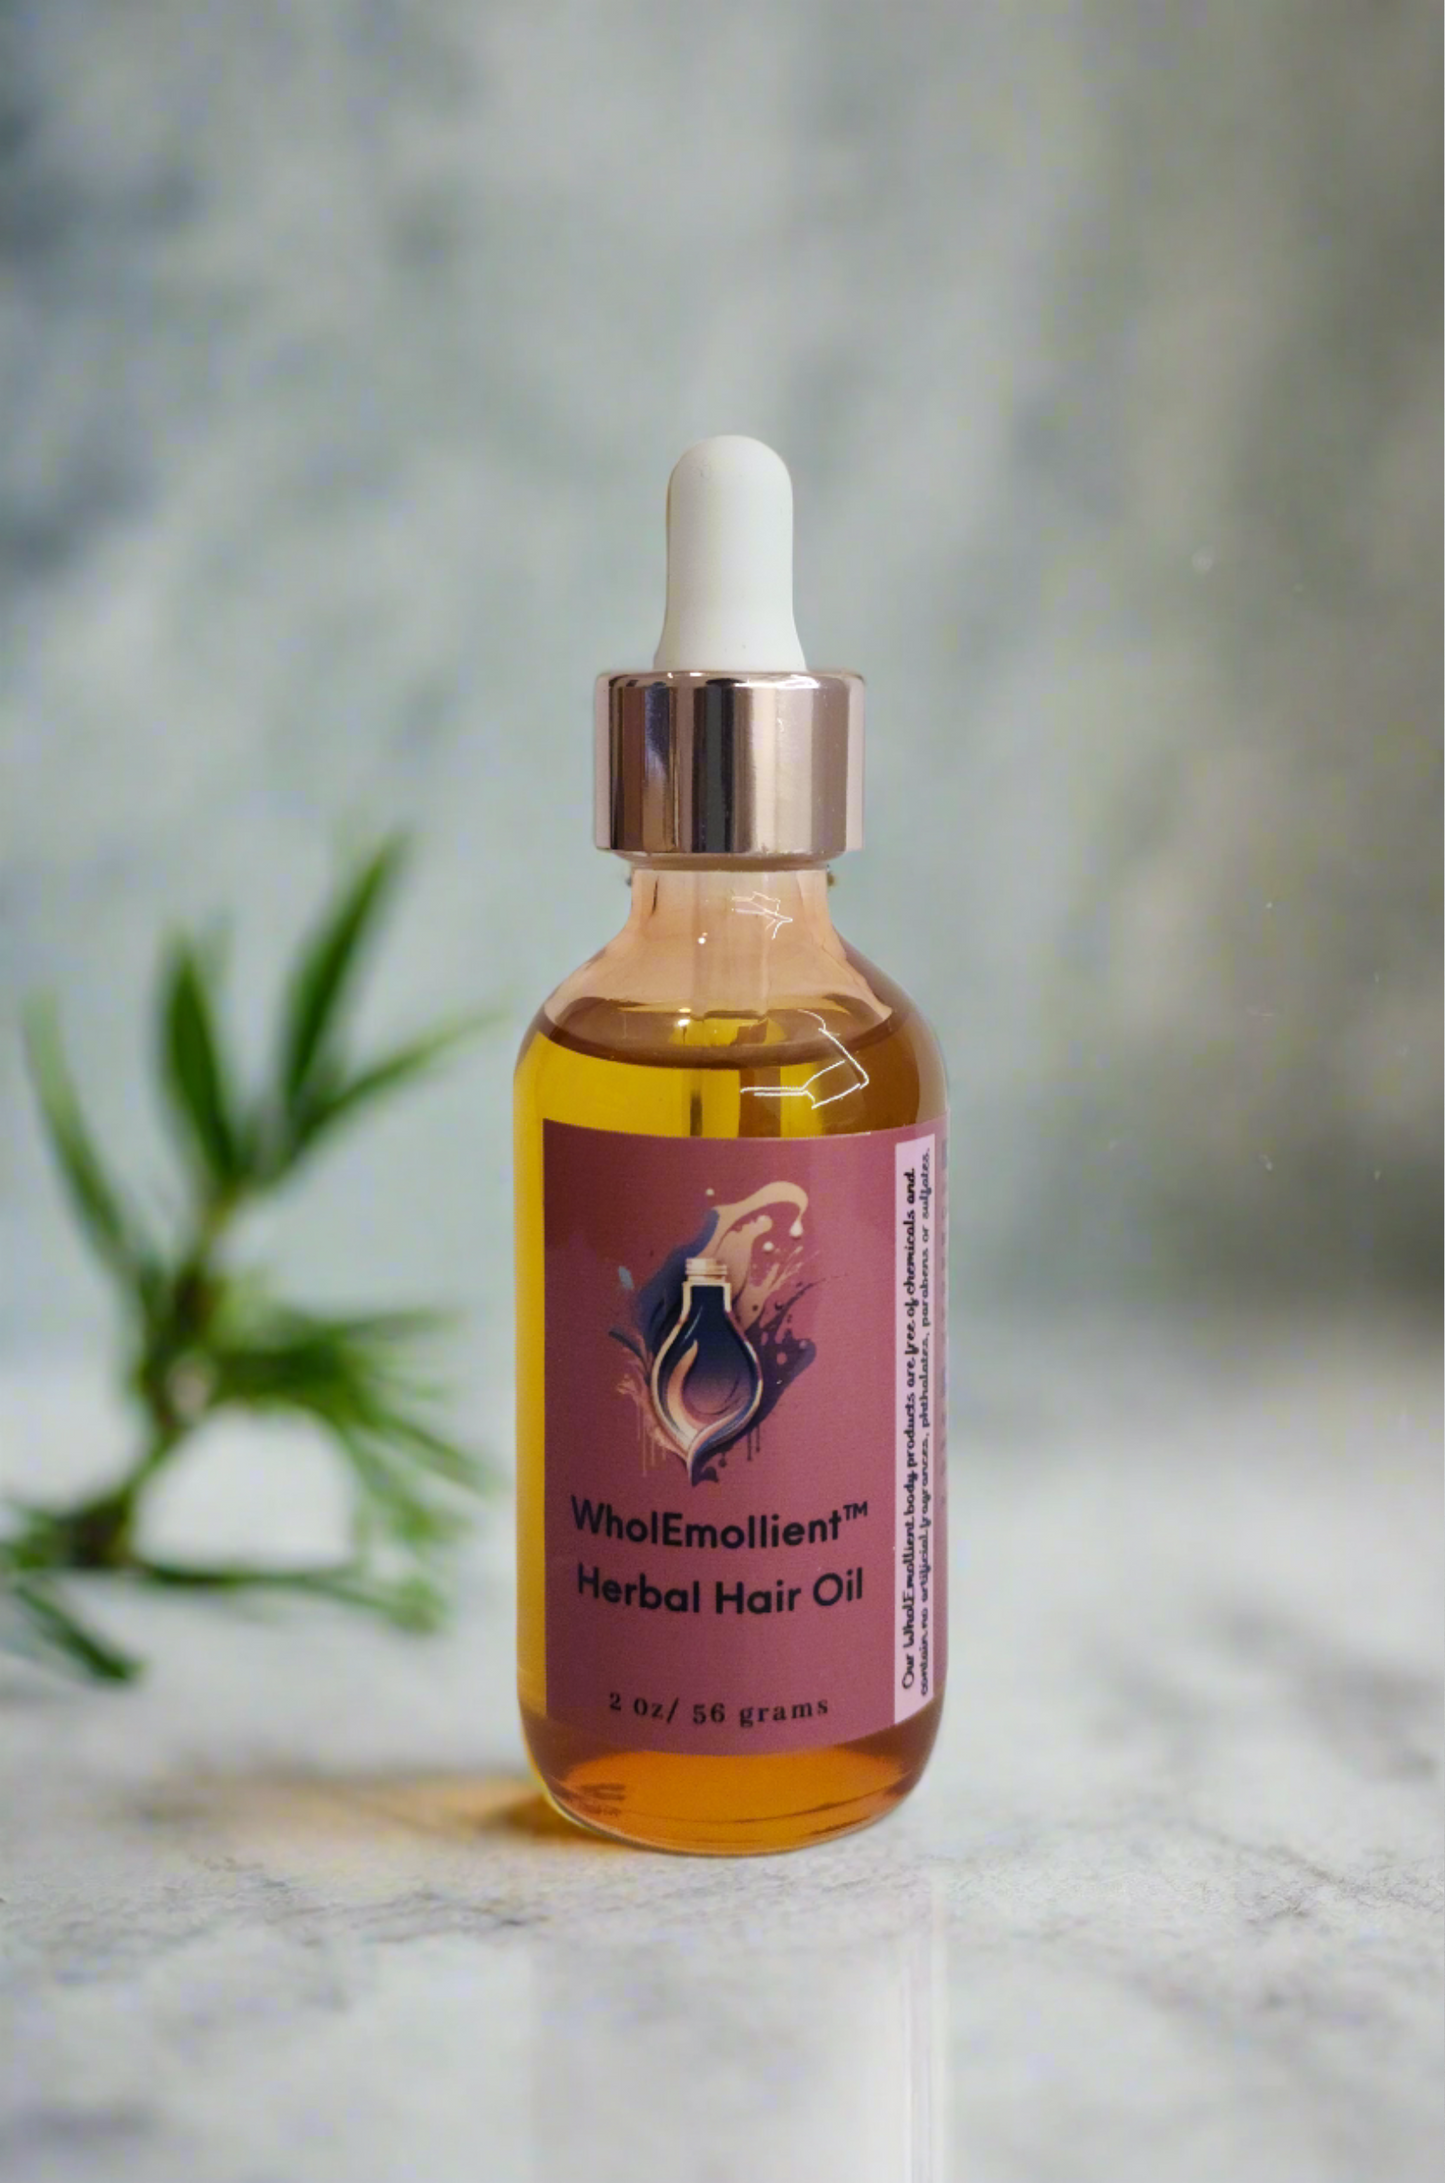 Rosemary infused Herbal Hair Oil 